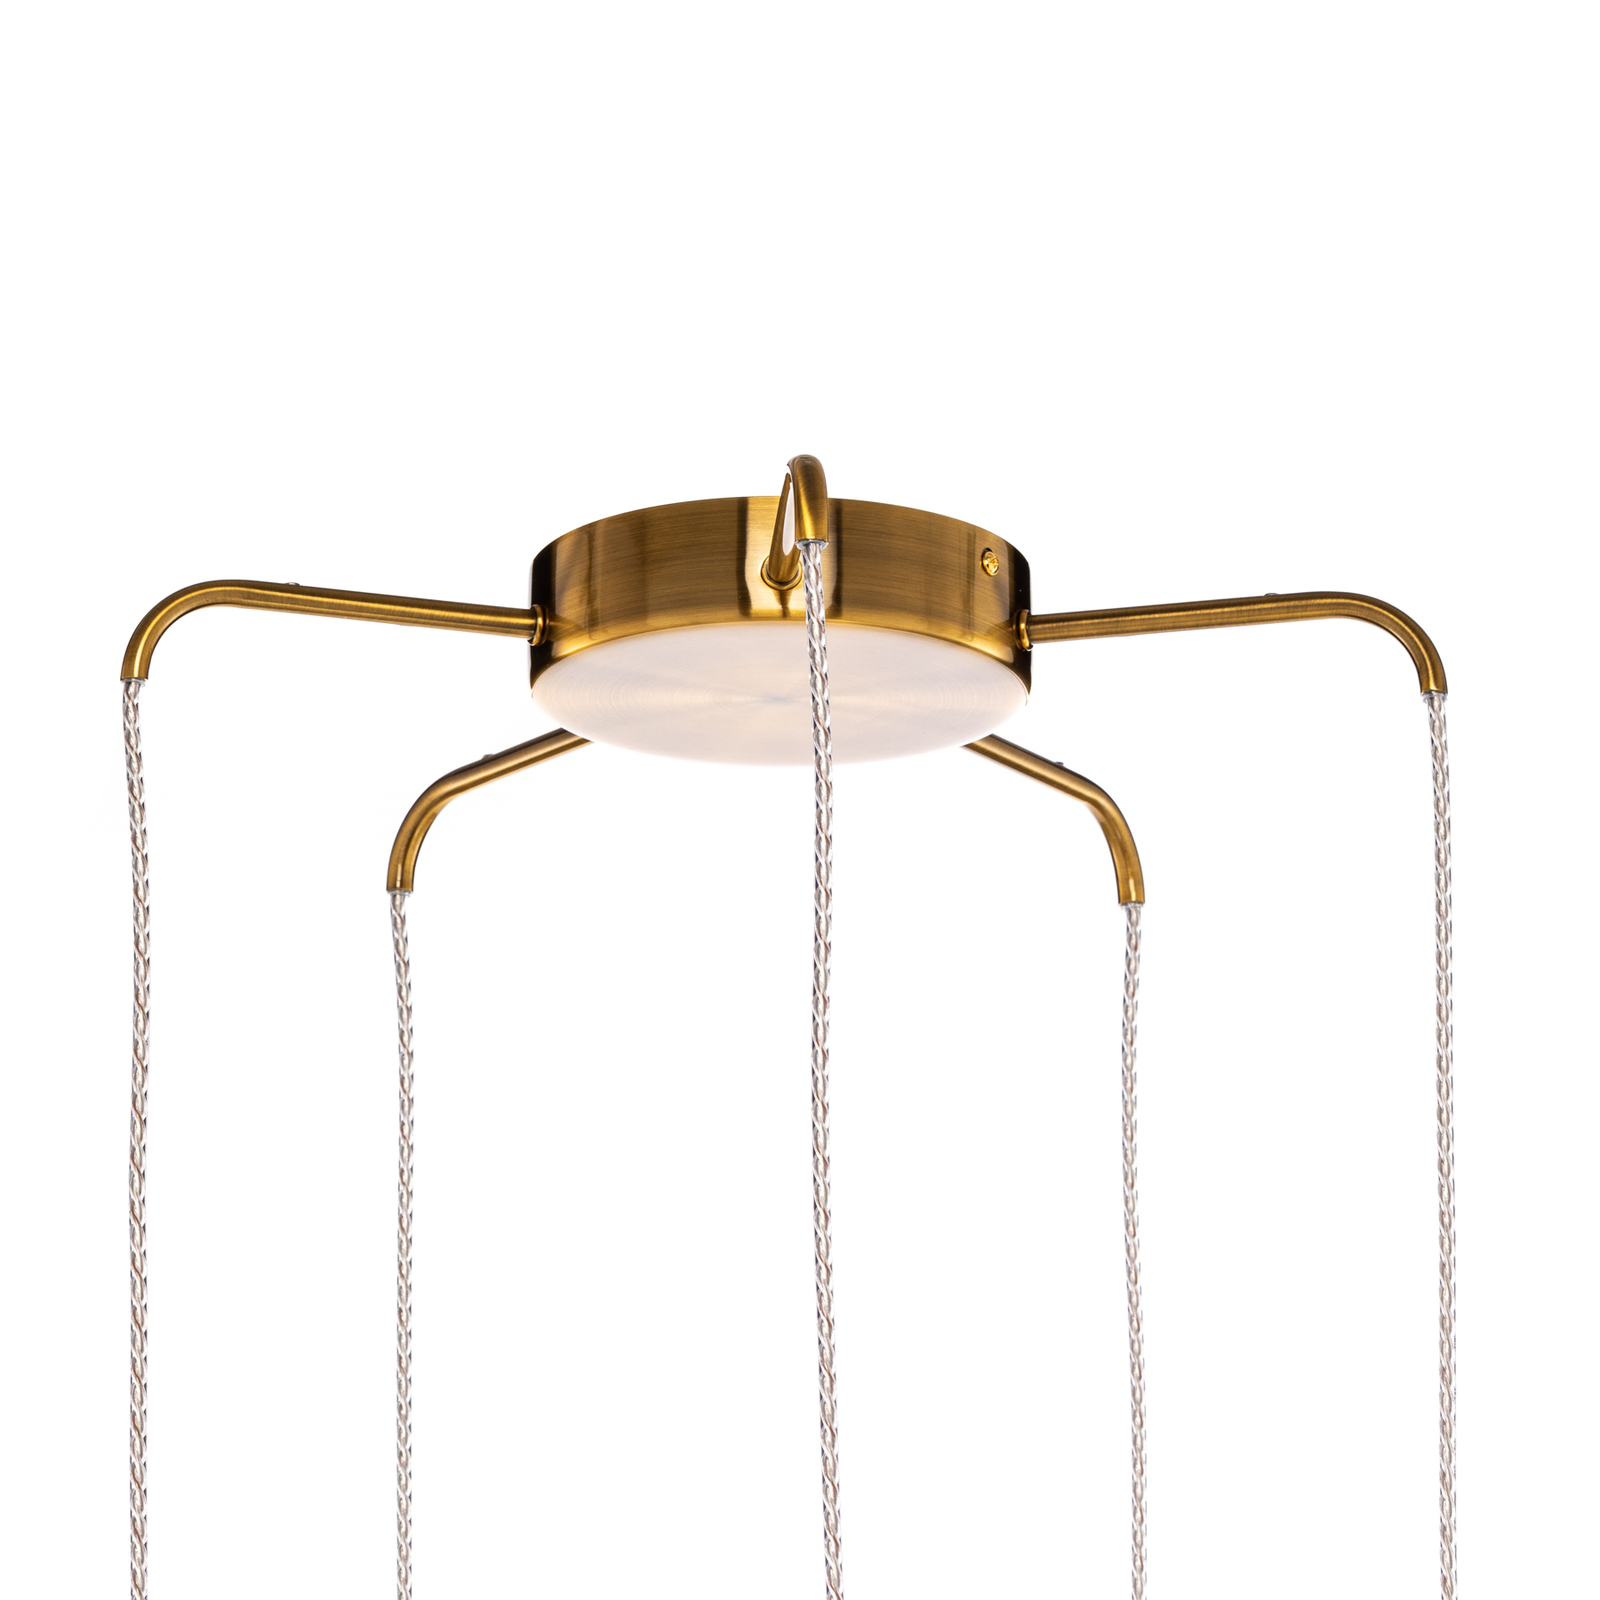 Lampa wisząca Lucande Freylin, 5-punktowa, bursztynowa, szkło, 48 cm